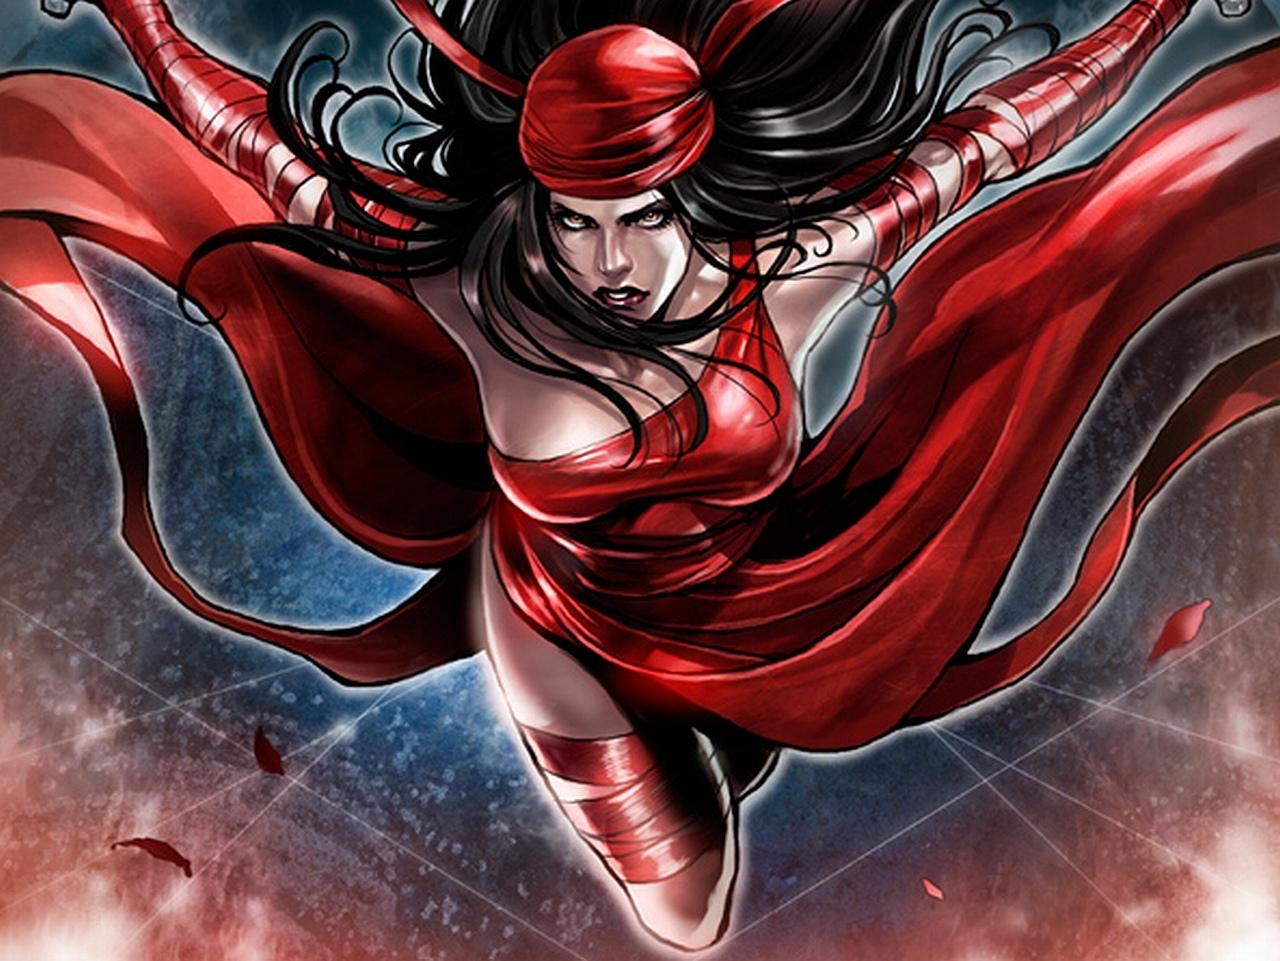 Elektra Comics at 1024 x 1024 iPad size wallpapers HD quality